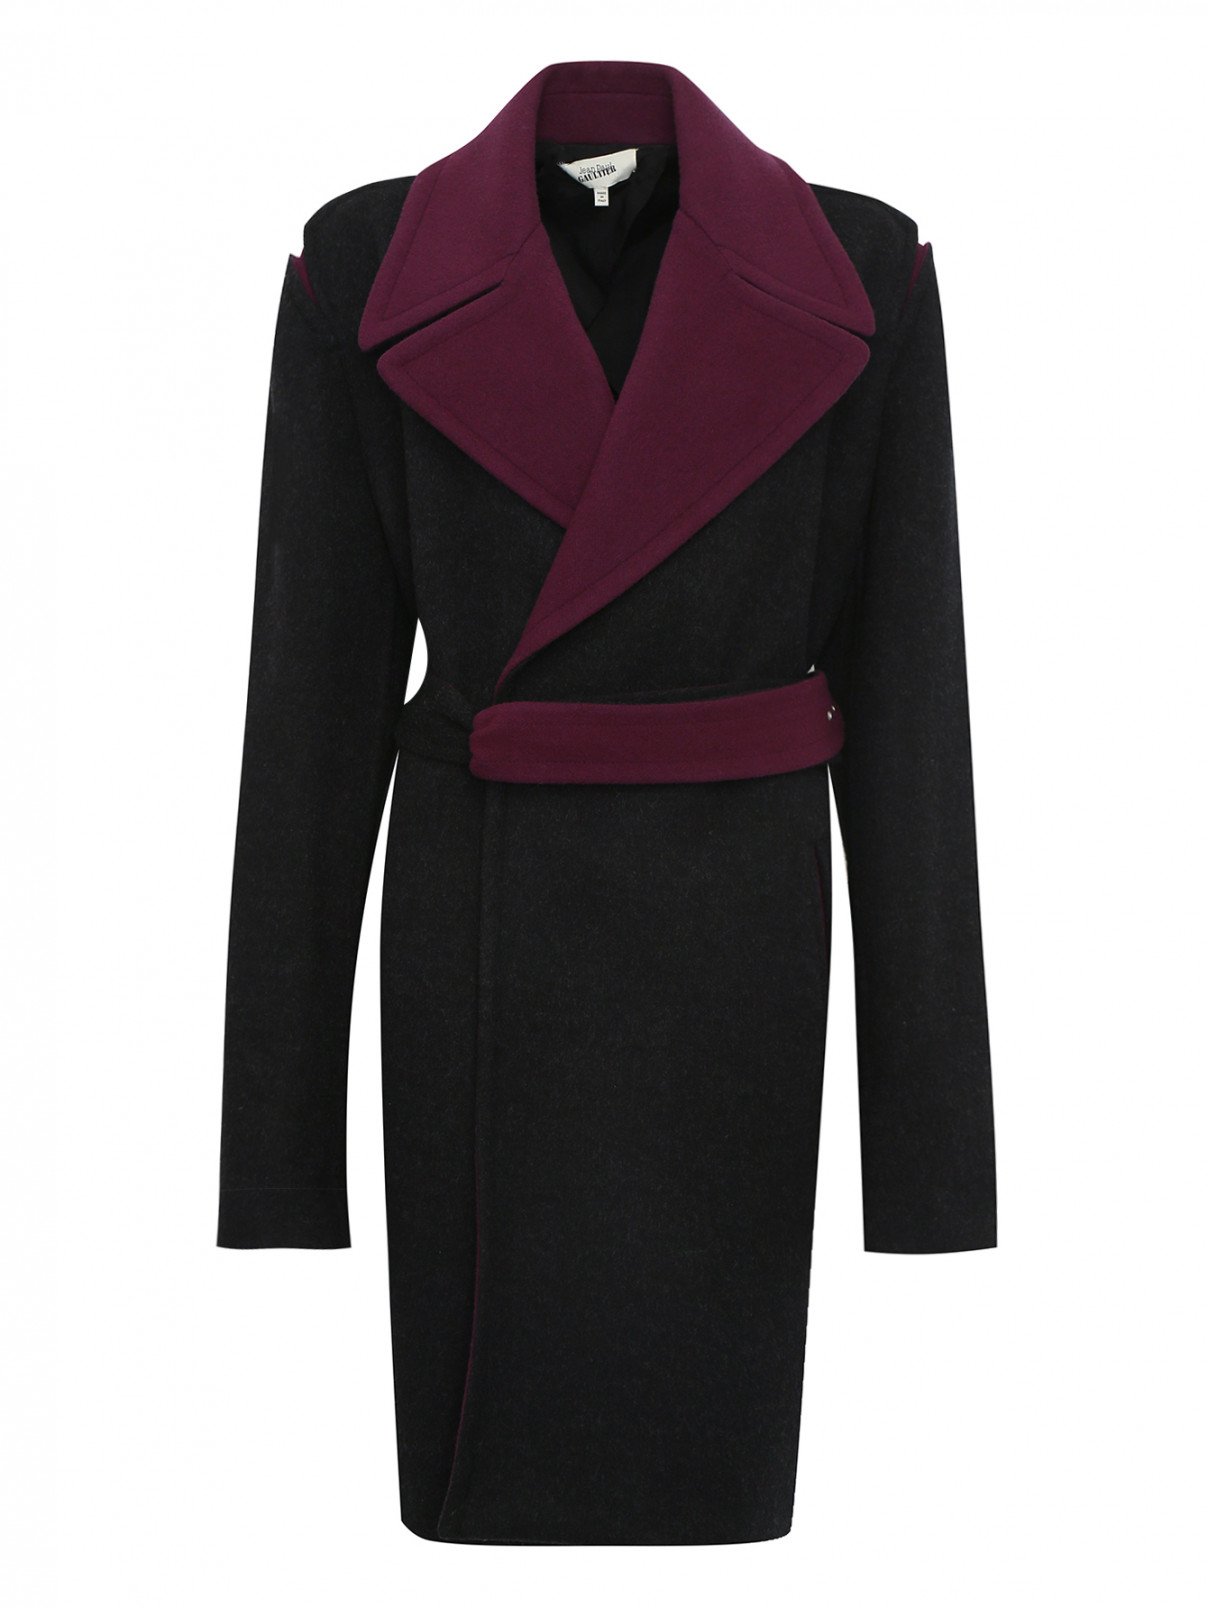 Пальто из шерсти с контрастной отделкой Jean Paul Gaultier  –  Общий вид  – Цвет:  Черный